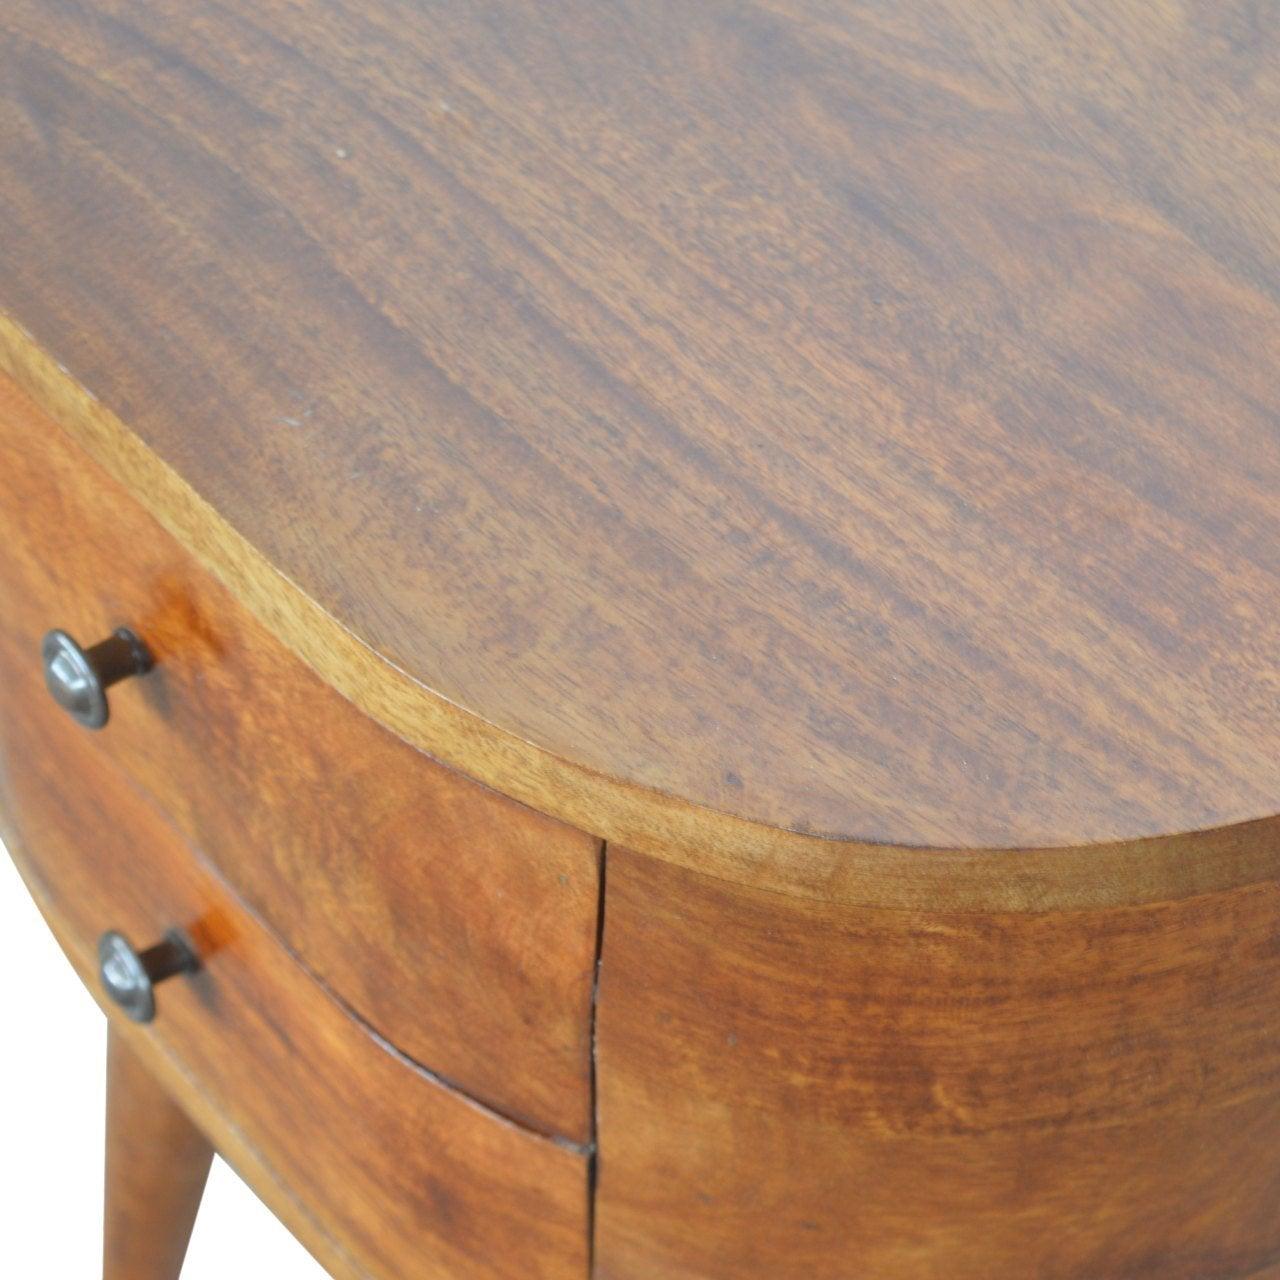 Chestnut rounded bedside table - crimblefest furniture - image 5